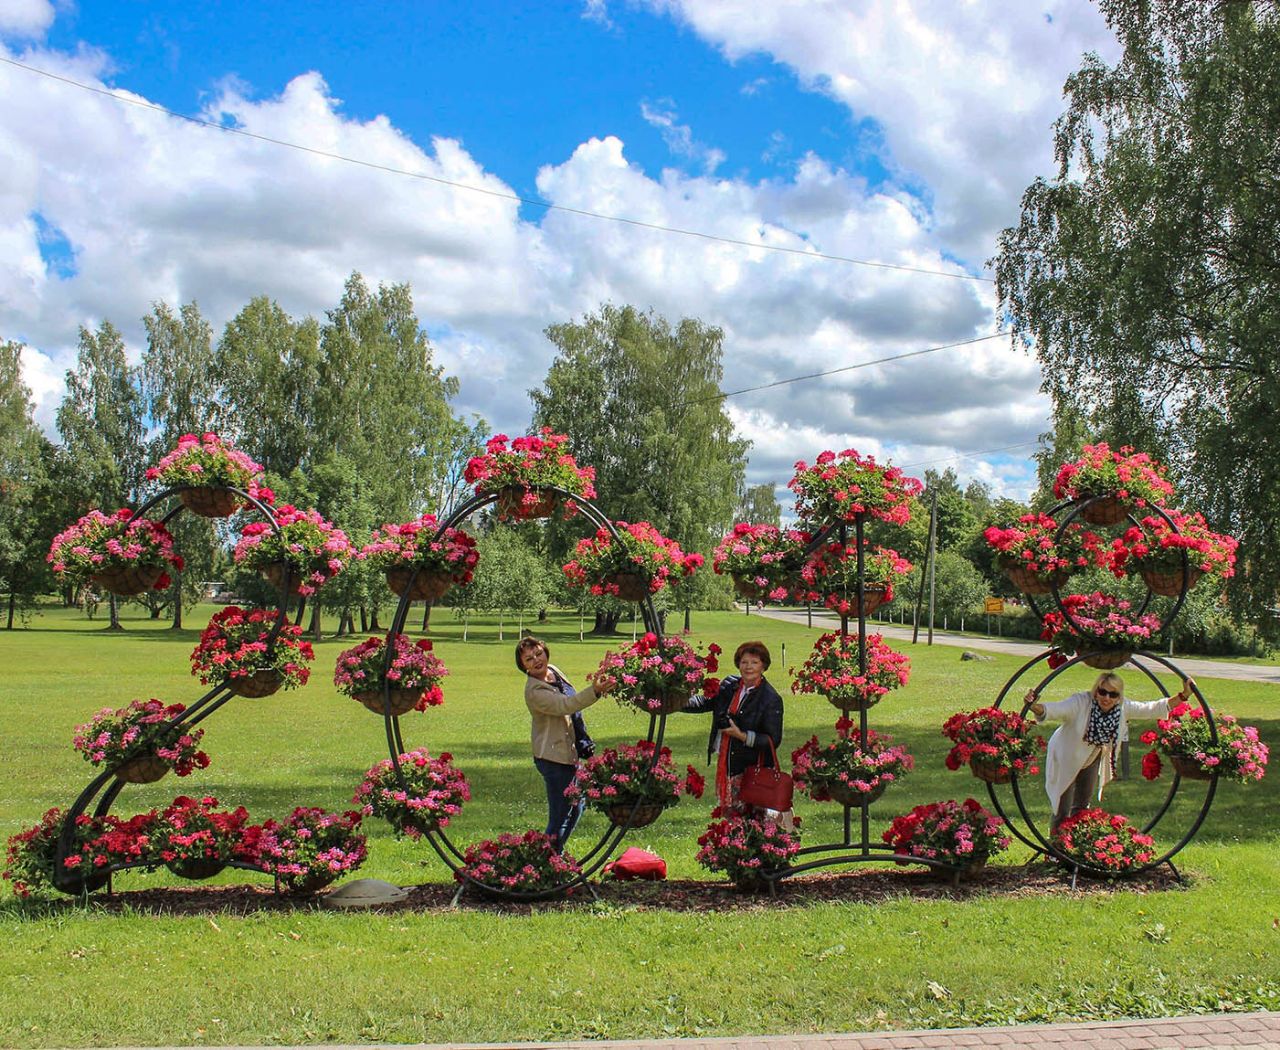 Сигулда. Цветочное настроение Сигулда, Латвия